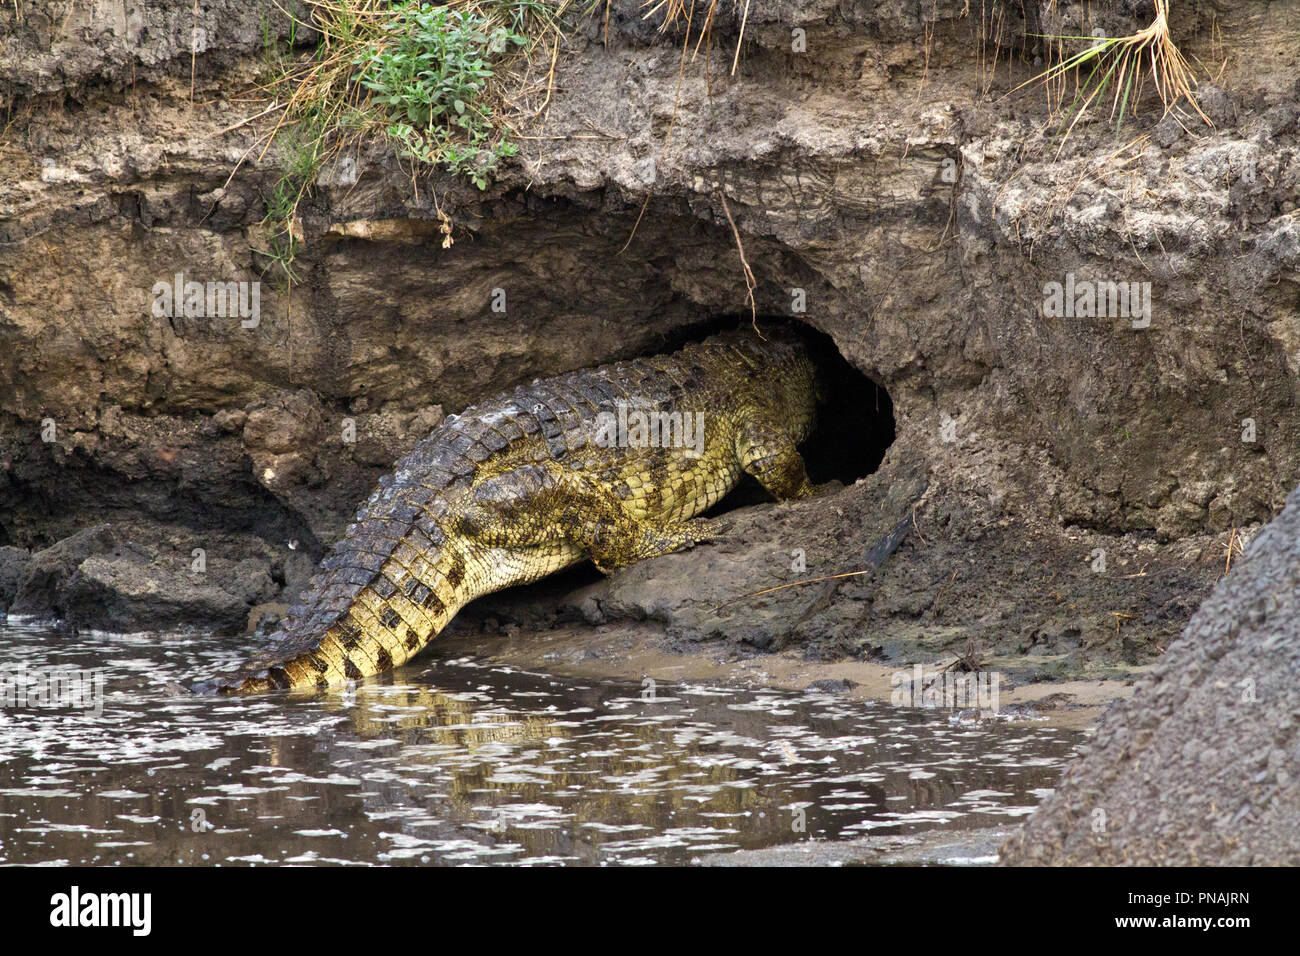 Los cocodrilos a menudo usan sus cuevas a lo largo de todo el año para refugio y descanso, no sólo cuando se seca el lecho del río en la estación seca, algunas pueden ser utilizadas para sí Foto de stock